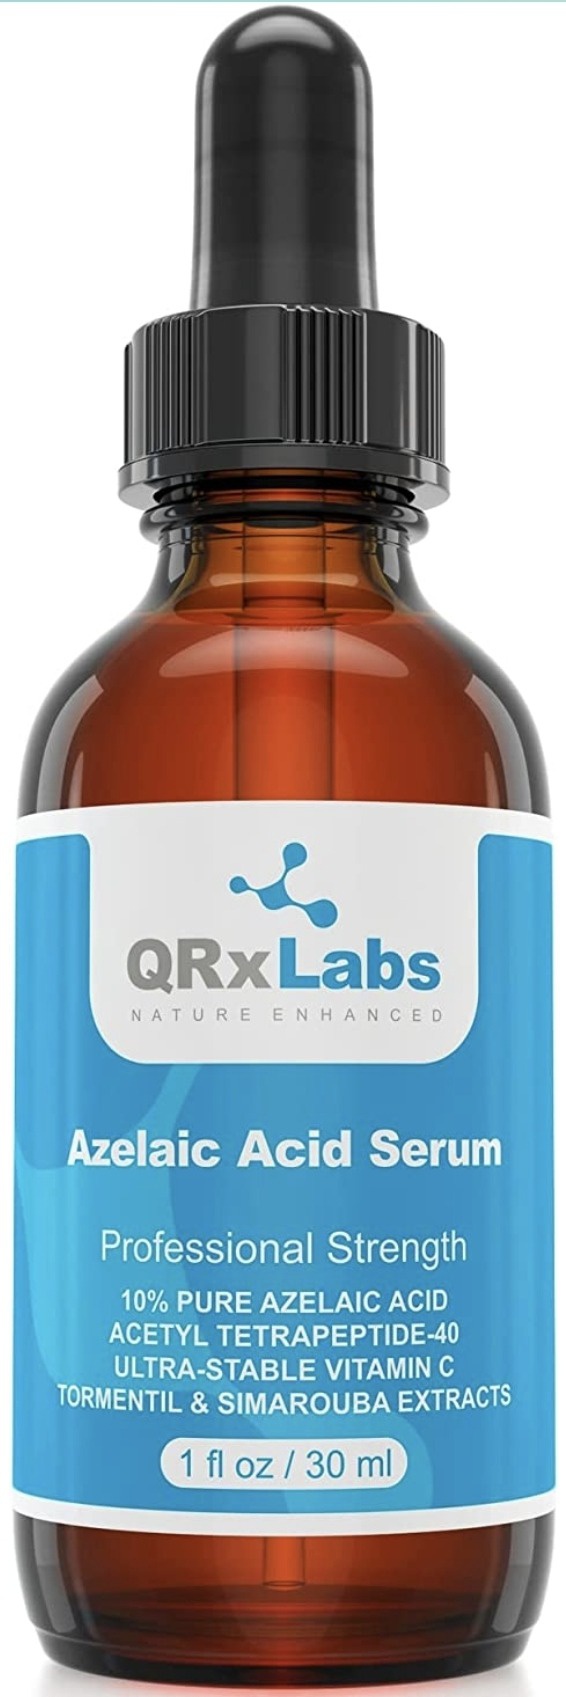 QRx Labs 10% Azelaic Acid Serum